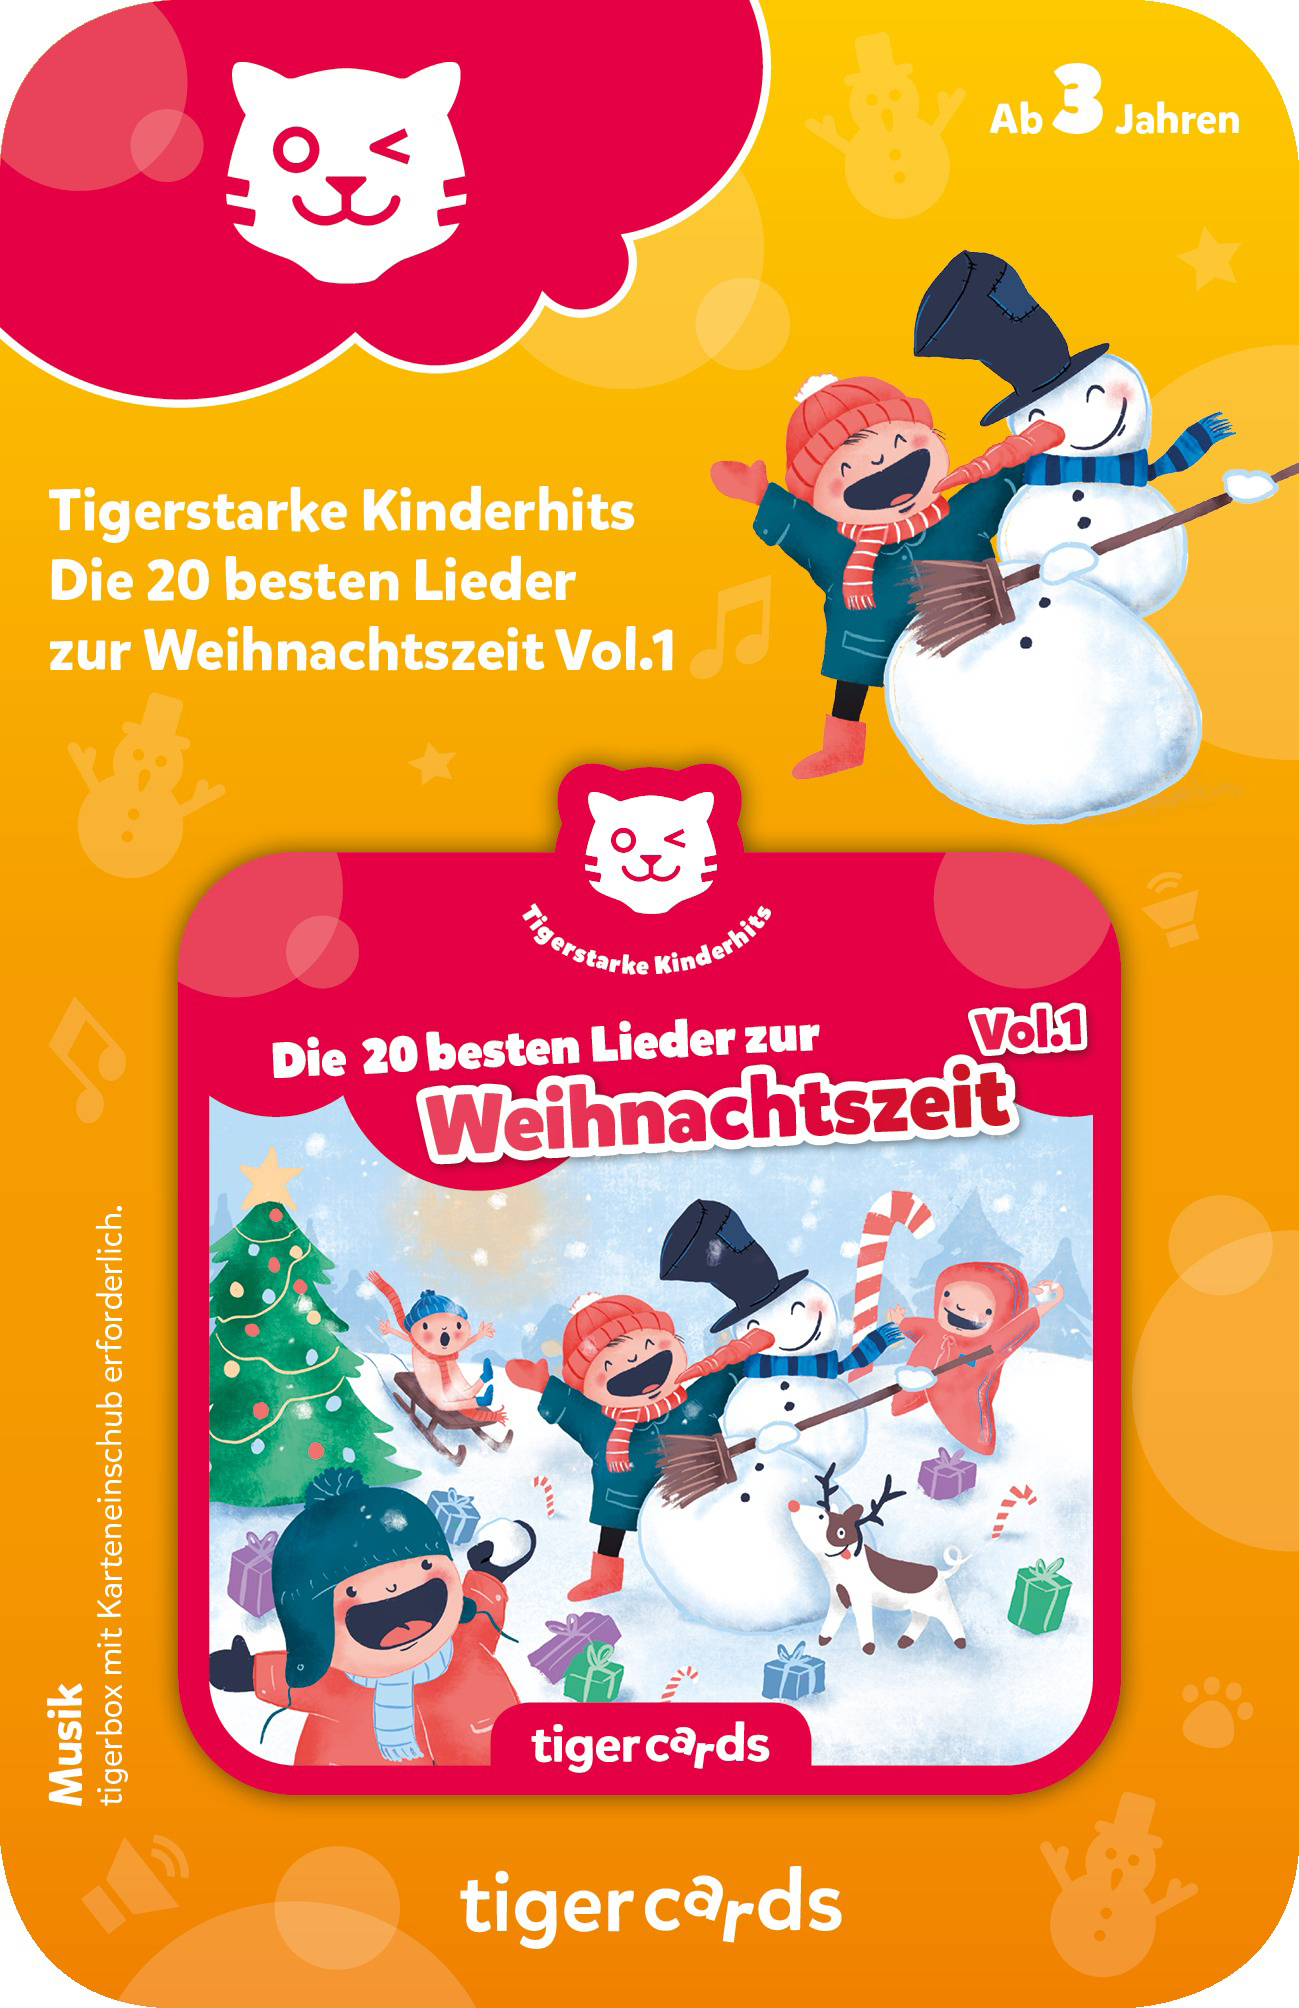 TIGERMEDIA Tigercard 20 Tigercard, - Vol.1 - Kinderhits zur Mehrfarbig Weihnachtszeit Die Lieder besten Tigerstarke